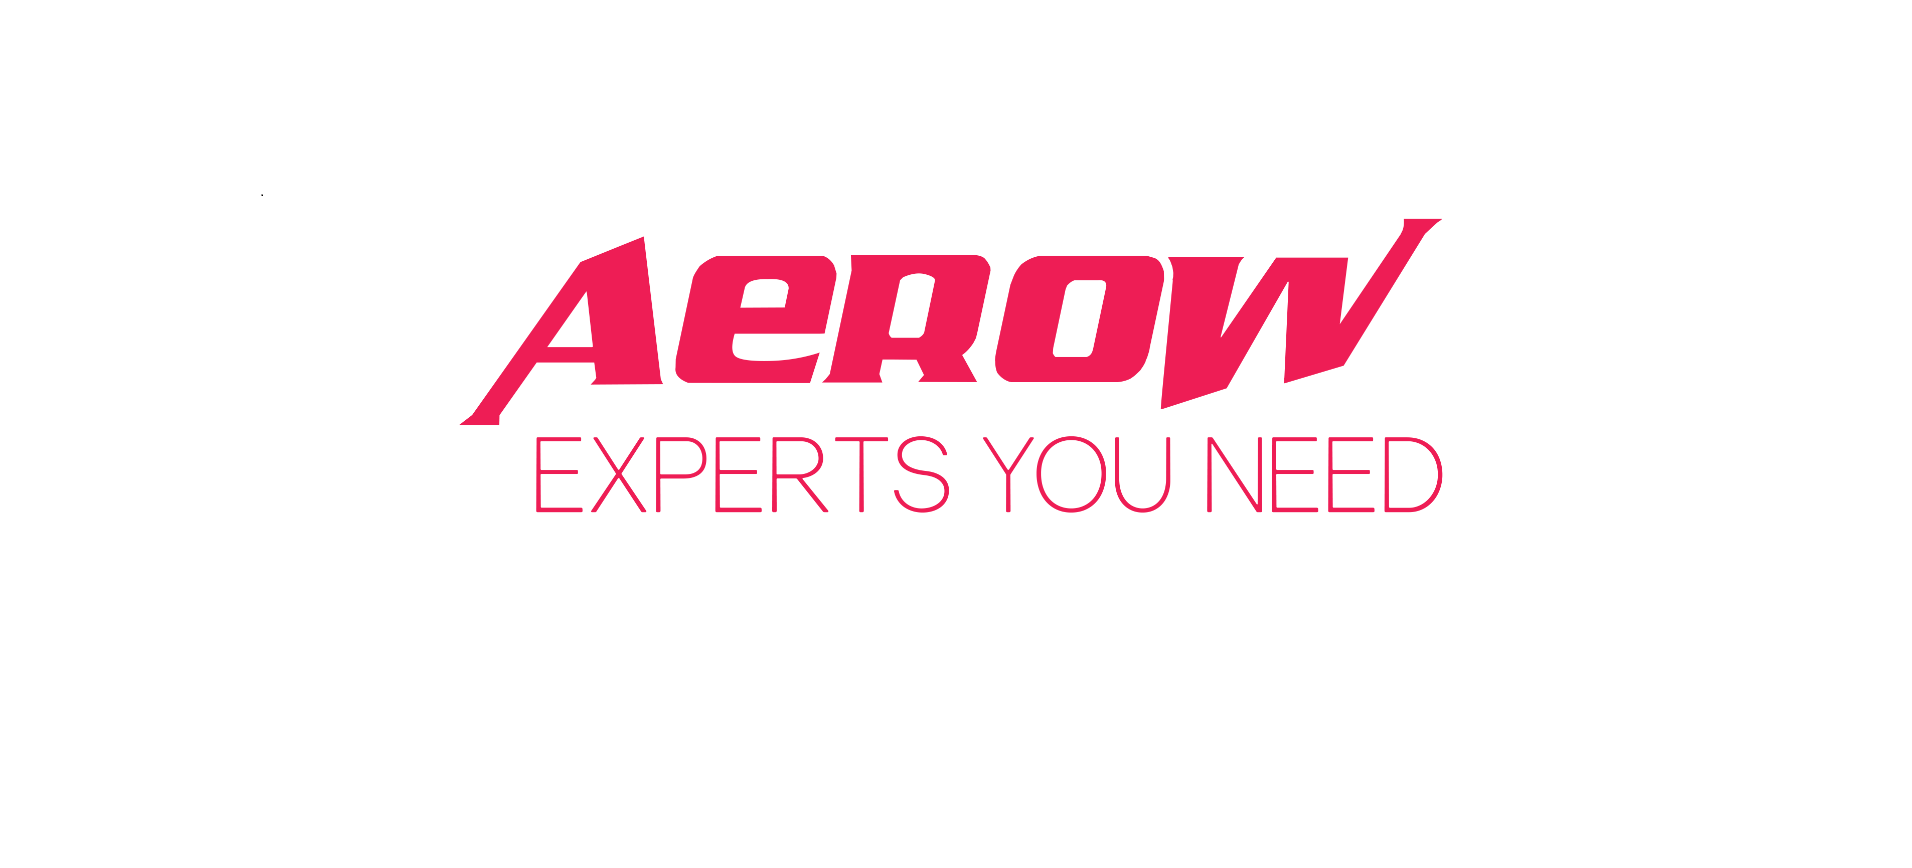 The AEROW logo